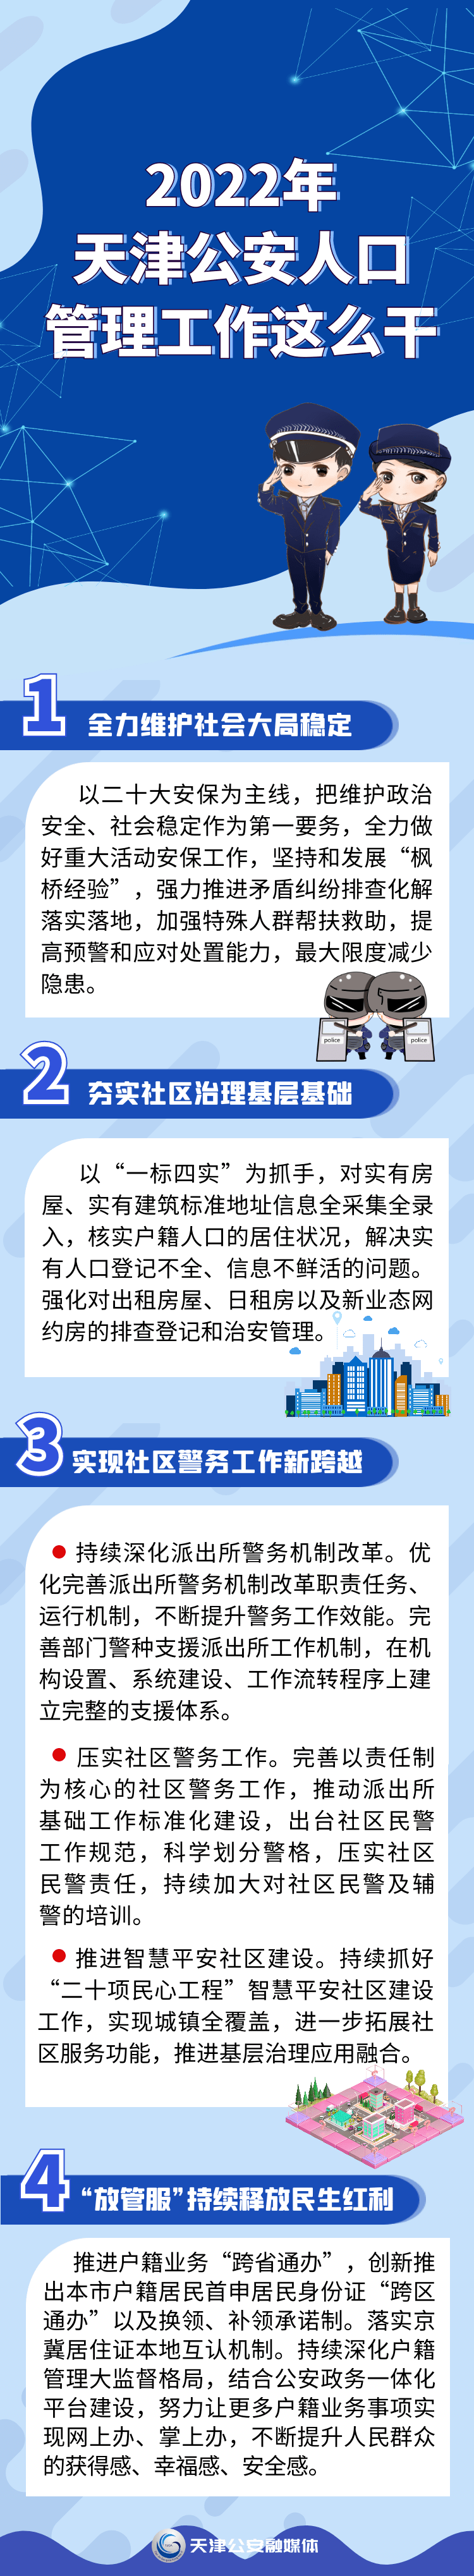 天津市人口_一图速览丨2022年,天津公安人口管理工作这么干